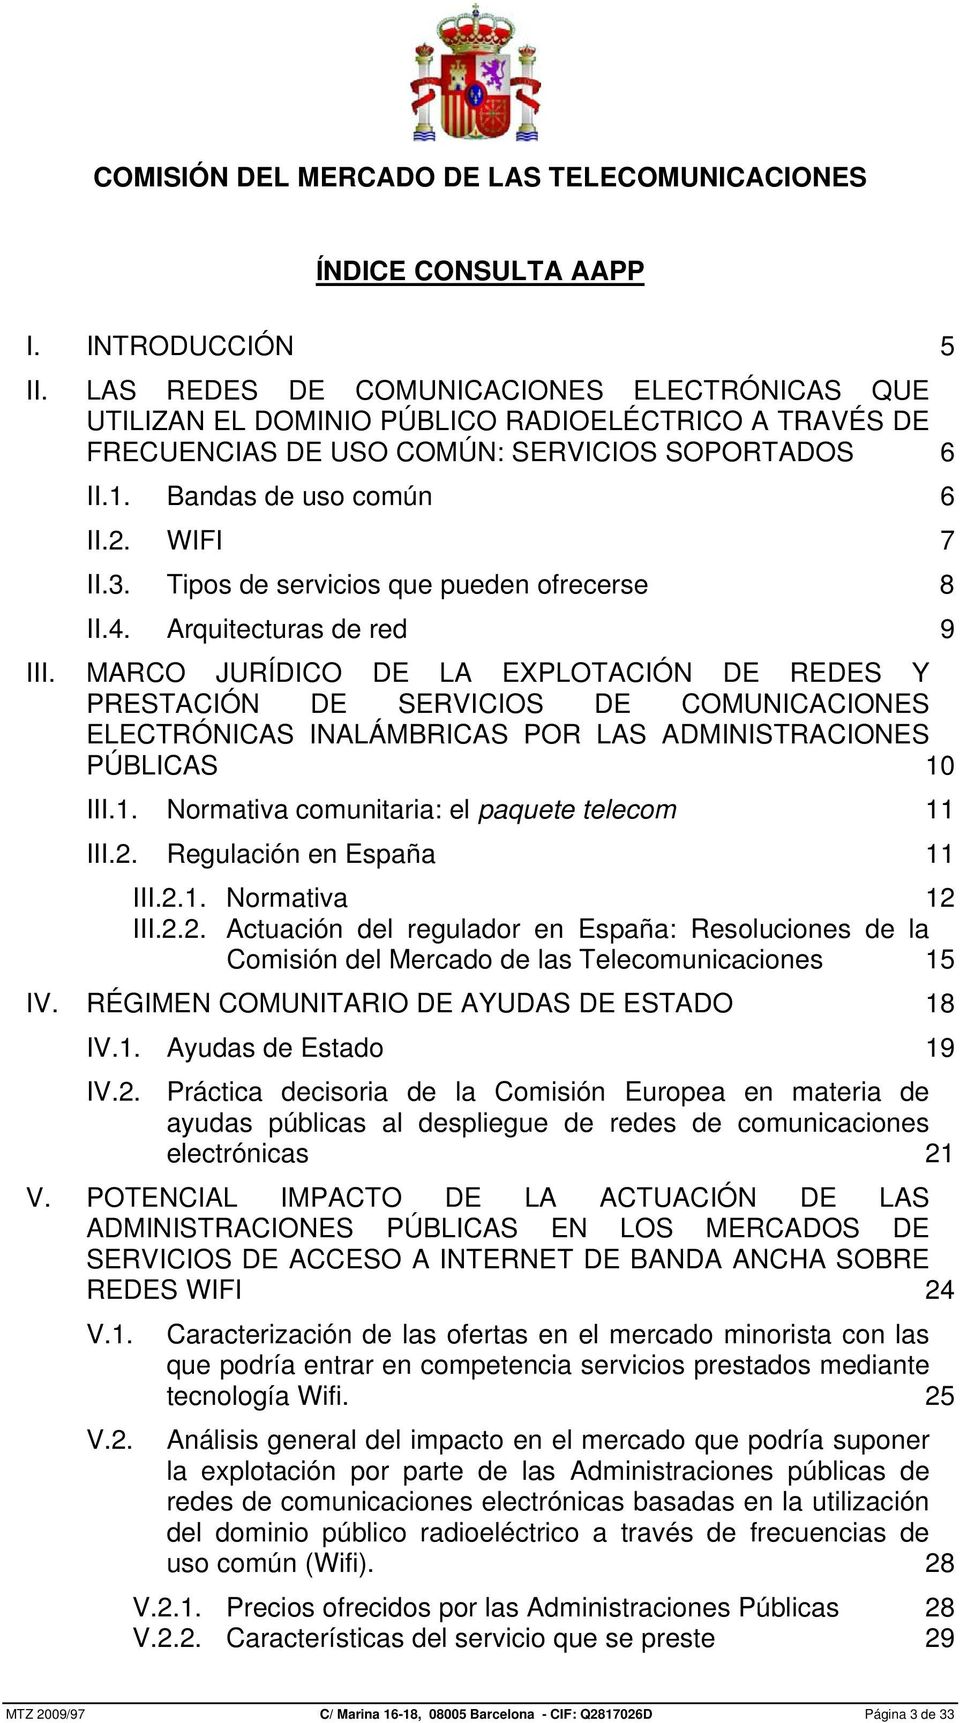 MARCO JURÍDICO DE LA EXPLOTACIÓN DE REDES Y PRESTACIÓN DE SERVICIOS DE COMUNICACIONES ELECTRÓNICAS INALÁMBRICAS POR LAS ADMINISTRACIONES PÚBLICAS 10 III.1. Normativa comunitaria: el paquete telecom 11 III.